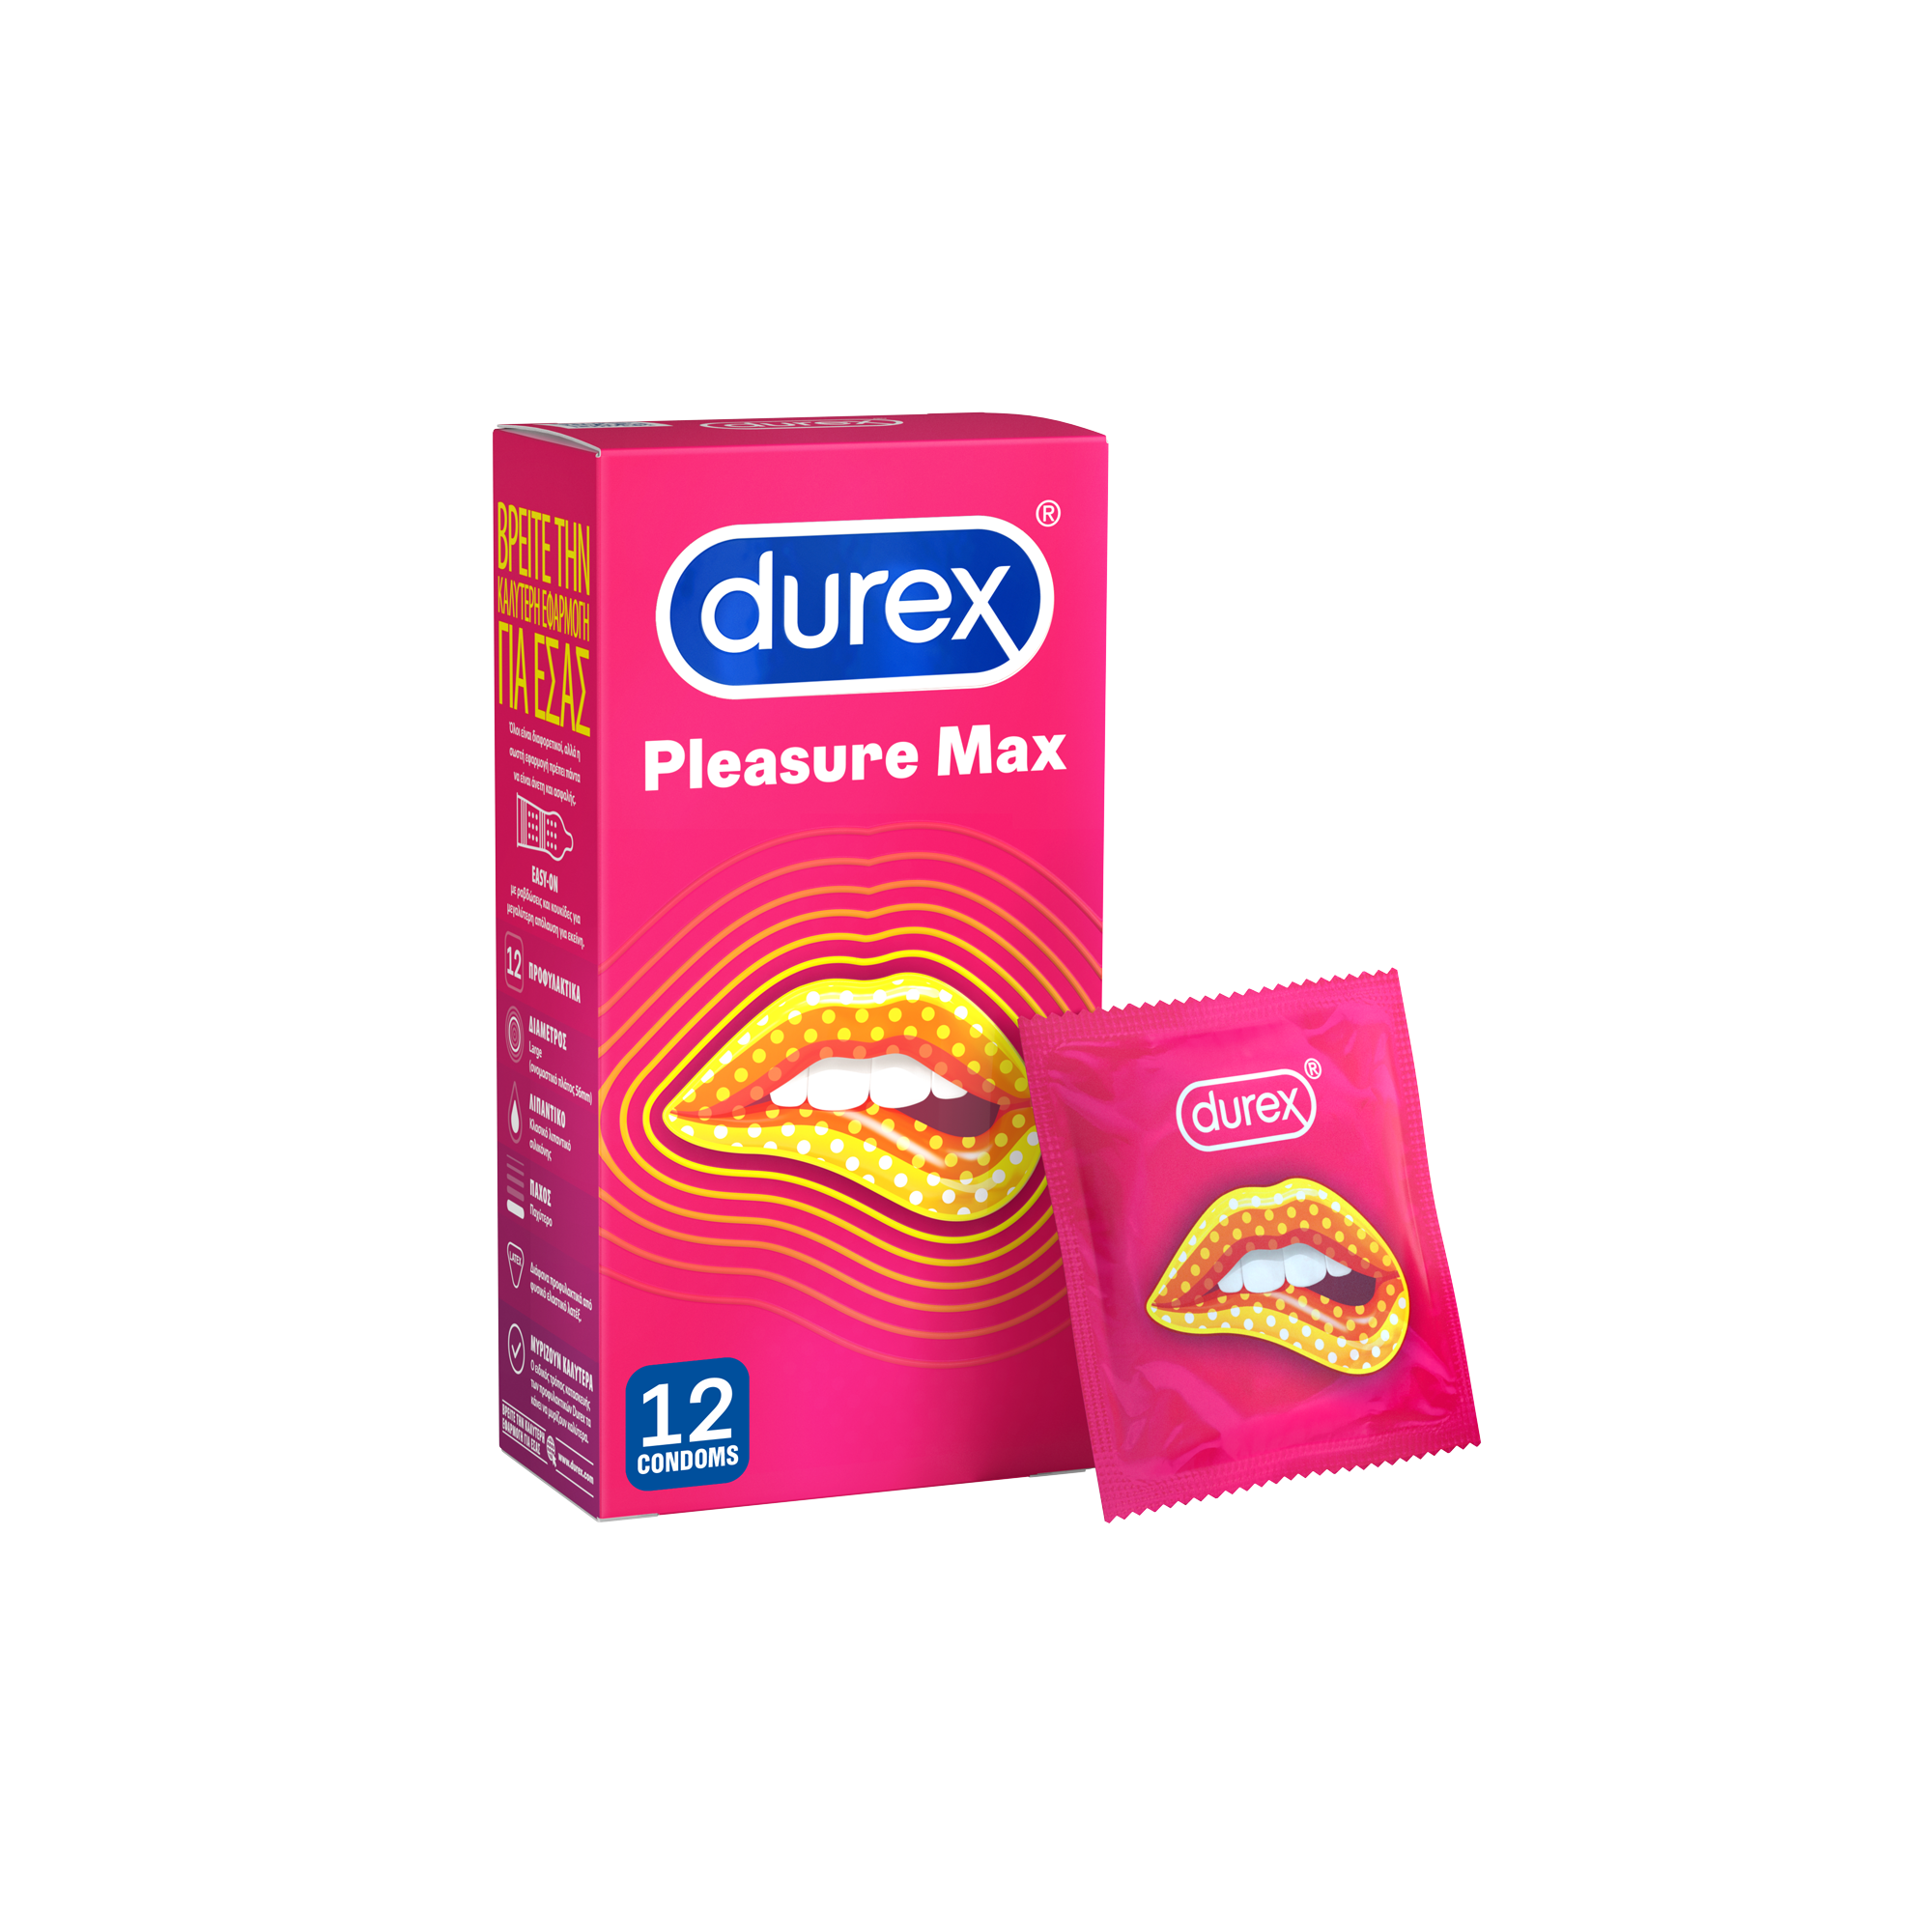 Durex Pleasure Max